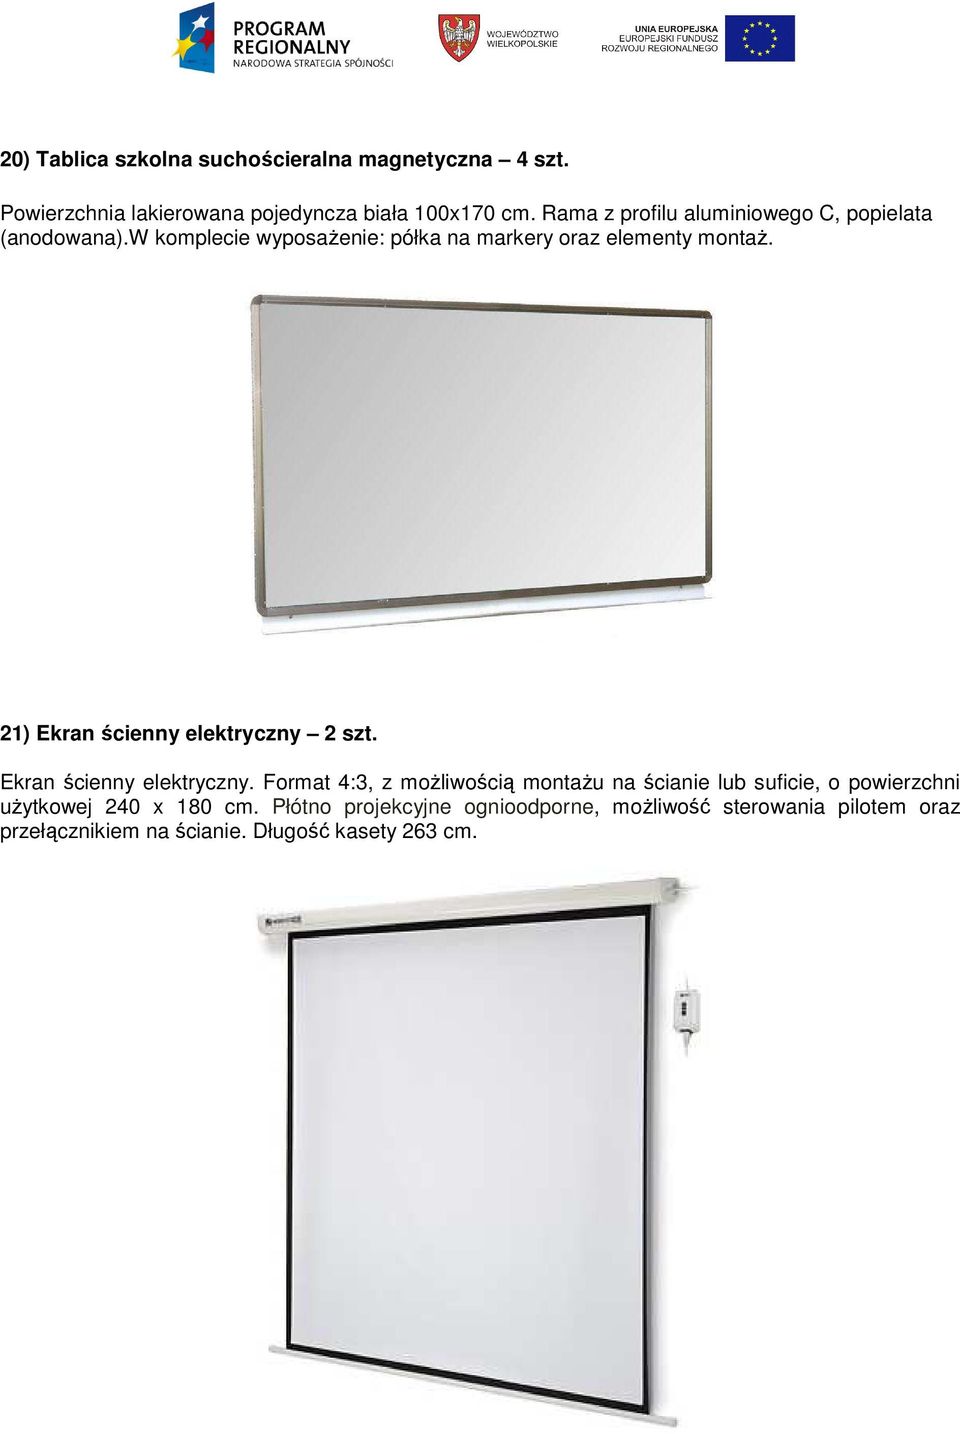 21) Ekran ścienny elektryczny 2 szt. Ekran ścienny elektryczny. Format 4:3, z moŝliwością montaŝu na ścianie lub suficie, o powierzchni uŝytkowej 240 x 180 cm.